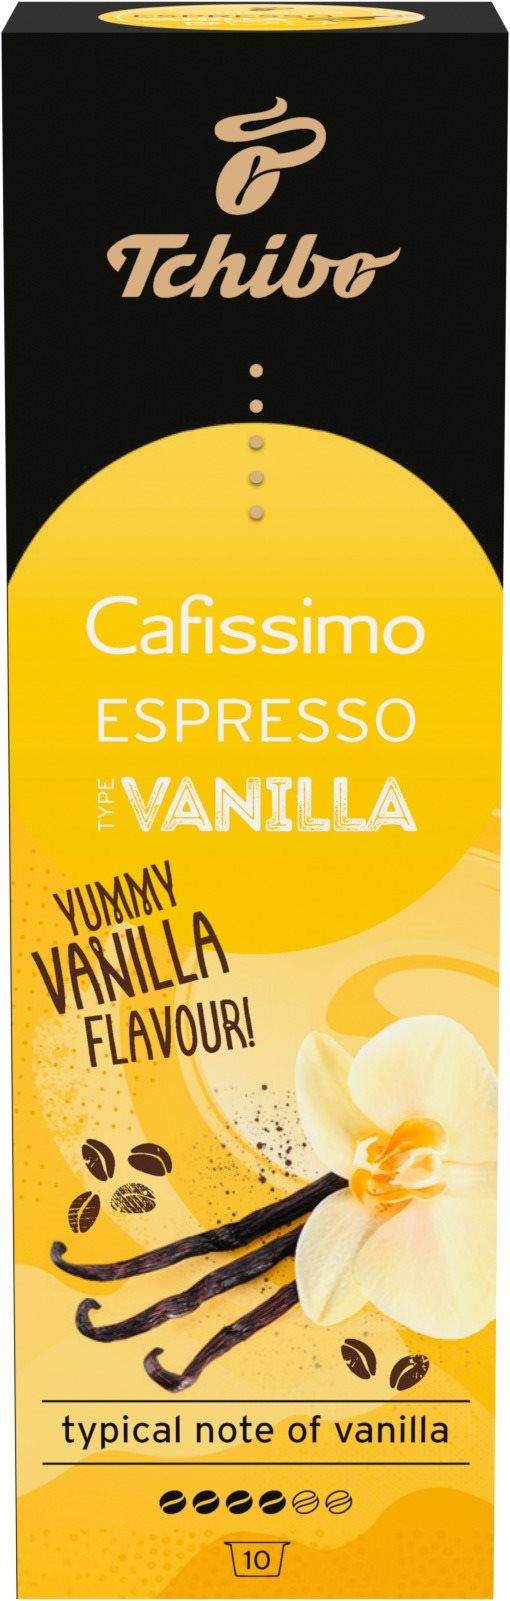 Tchibo Cafissimo Espresso Vanilla 70g